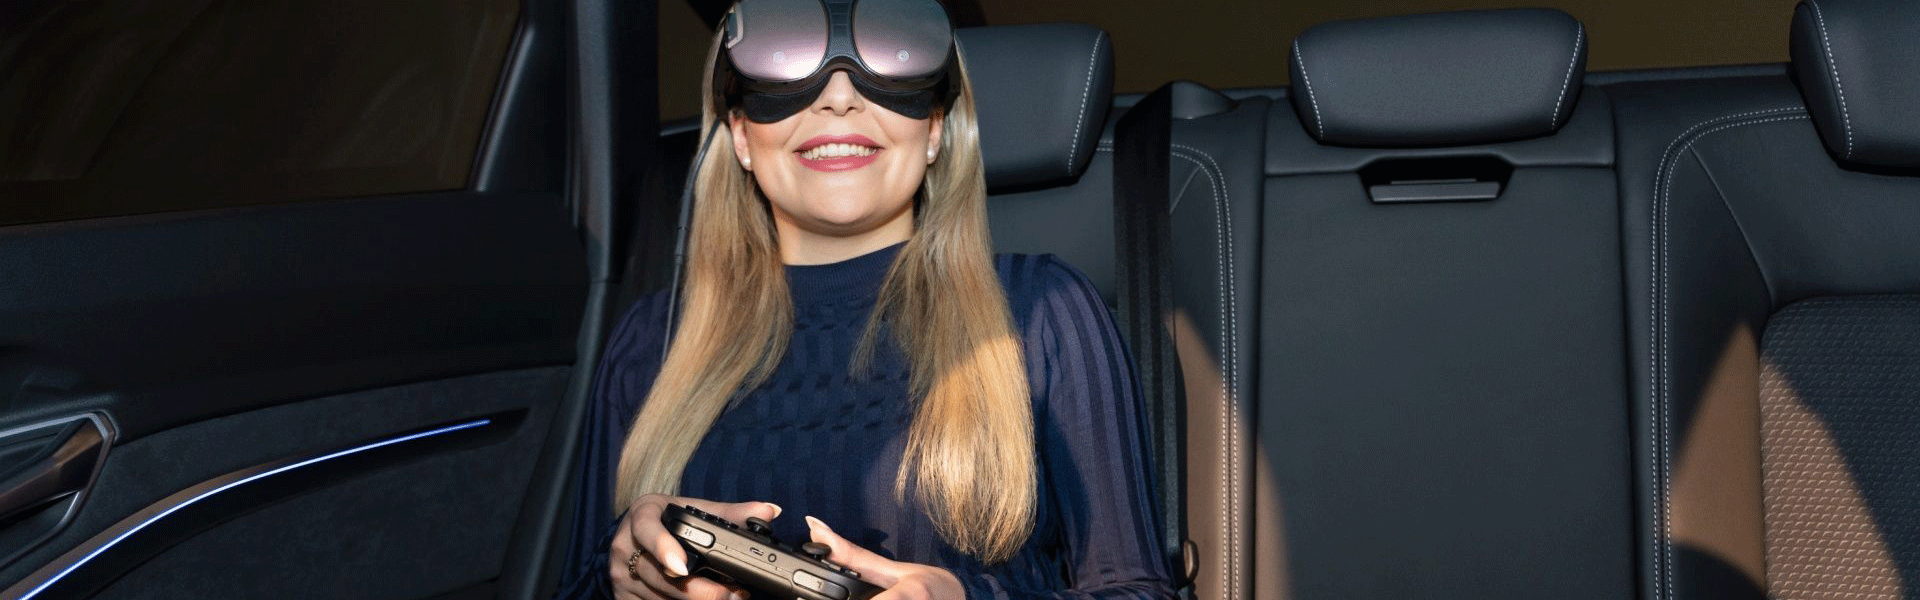 Ellada Kaufhold v avtomobilu nosi očala za navidezno resničnost.